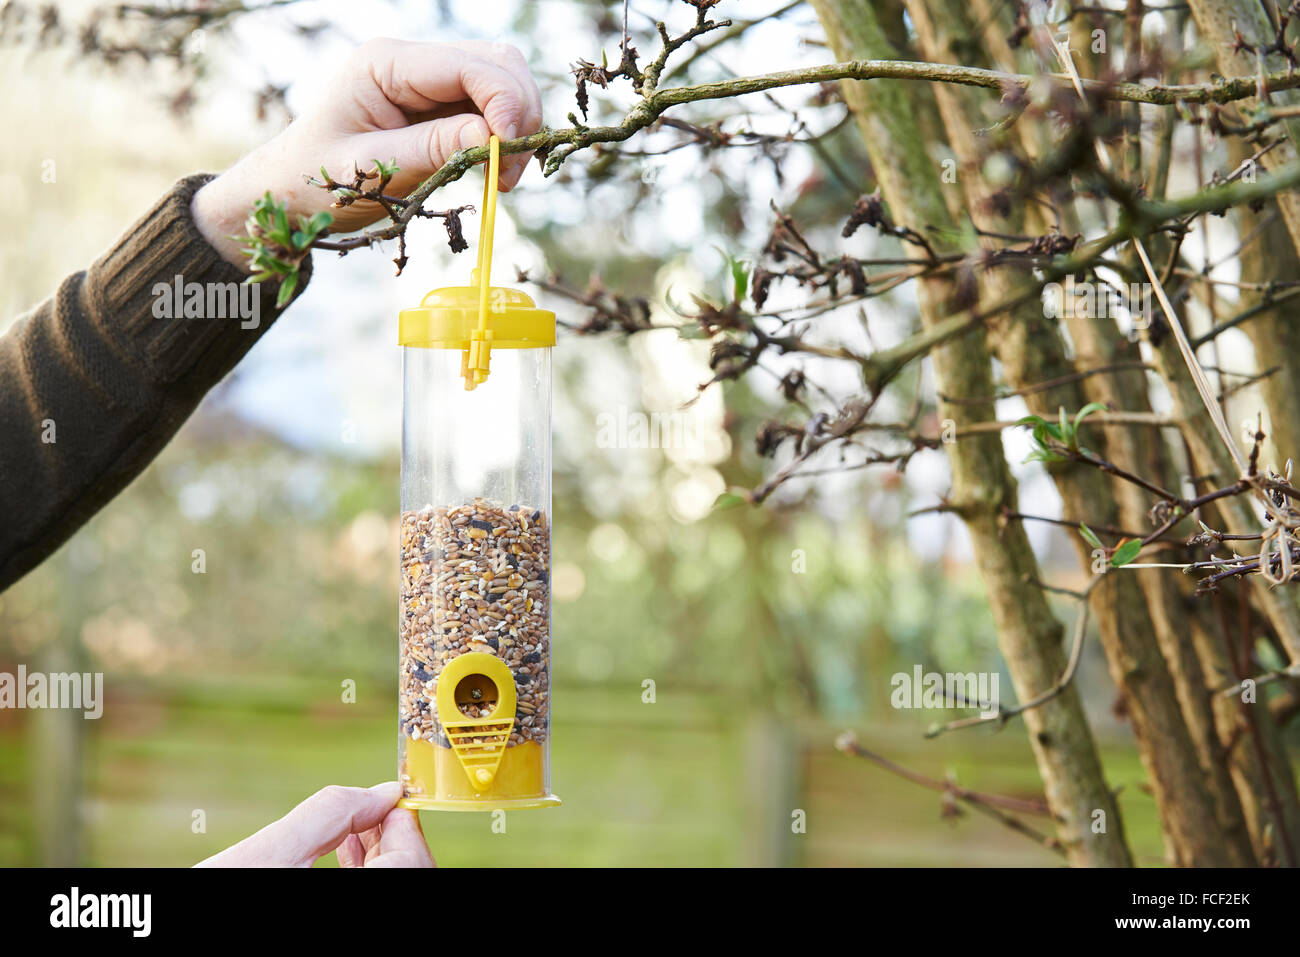 Man Hanging Bird Feeder In Garden Stock Photo